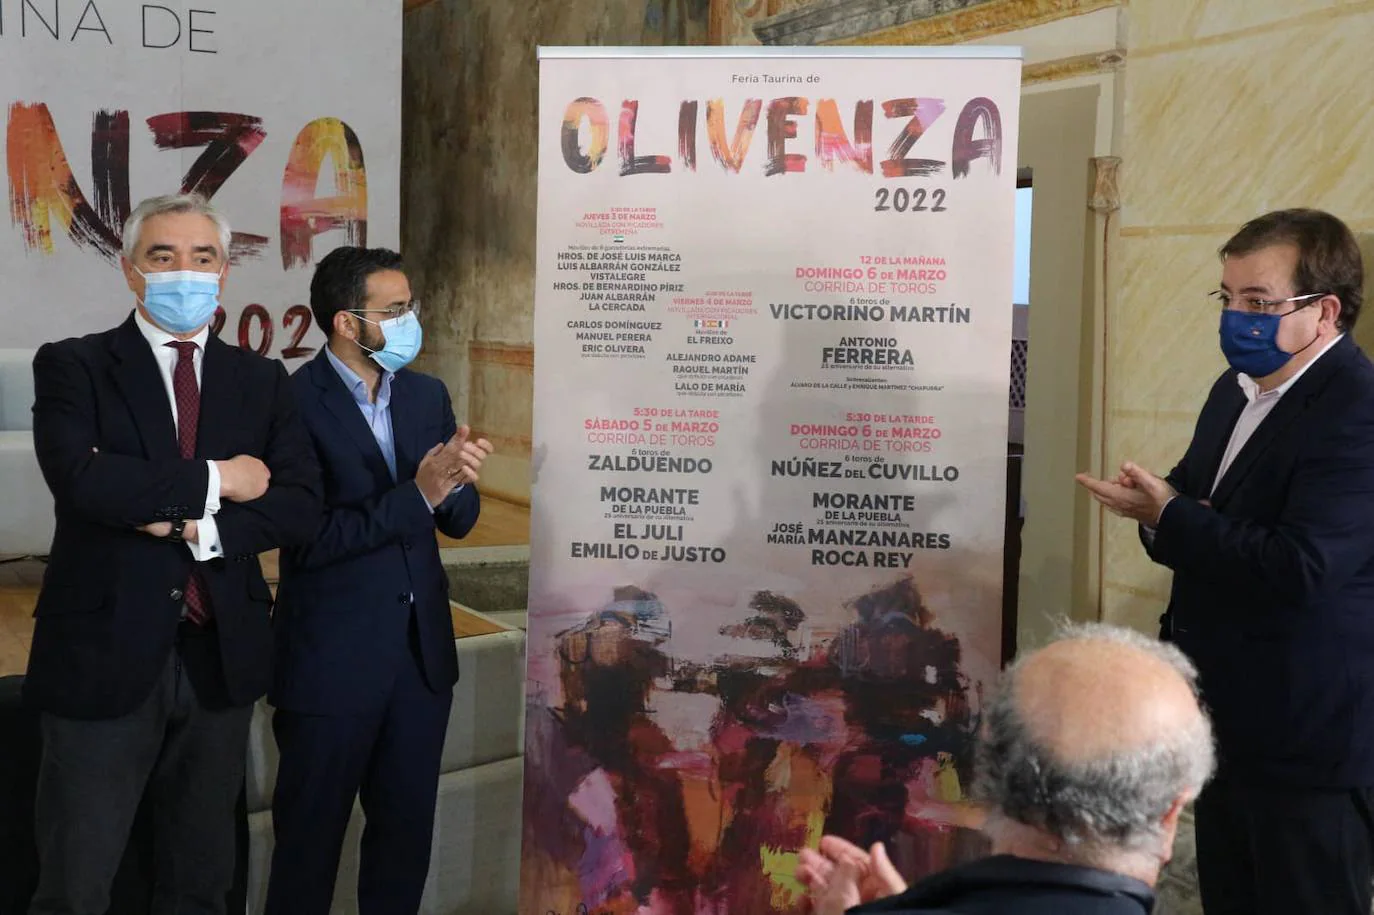 El empresario José Cutiño, el alcalde Manuel J. González y el presidente Guillermo Fernández Vara descubren el cartel de la feria en presencia del ex-seleccionador nacional Vicente del Bosque. 